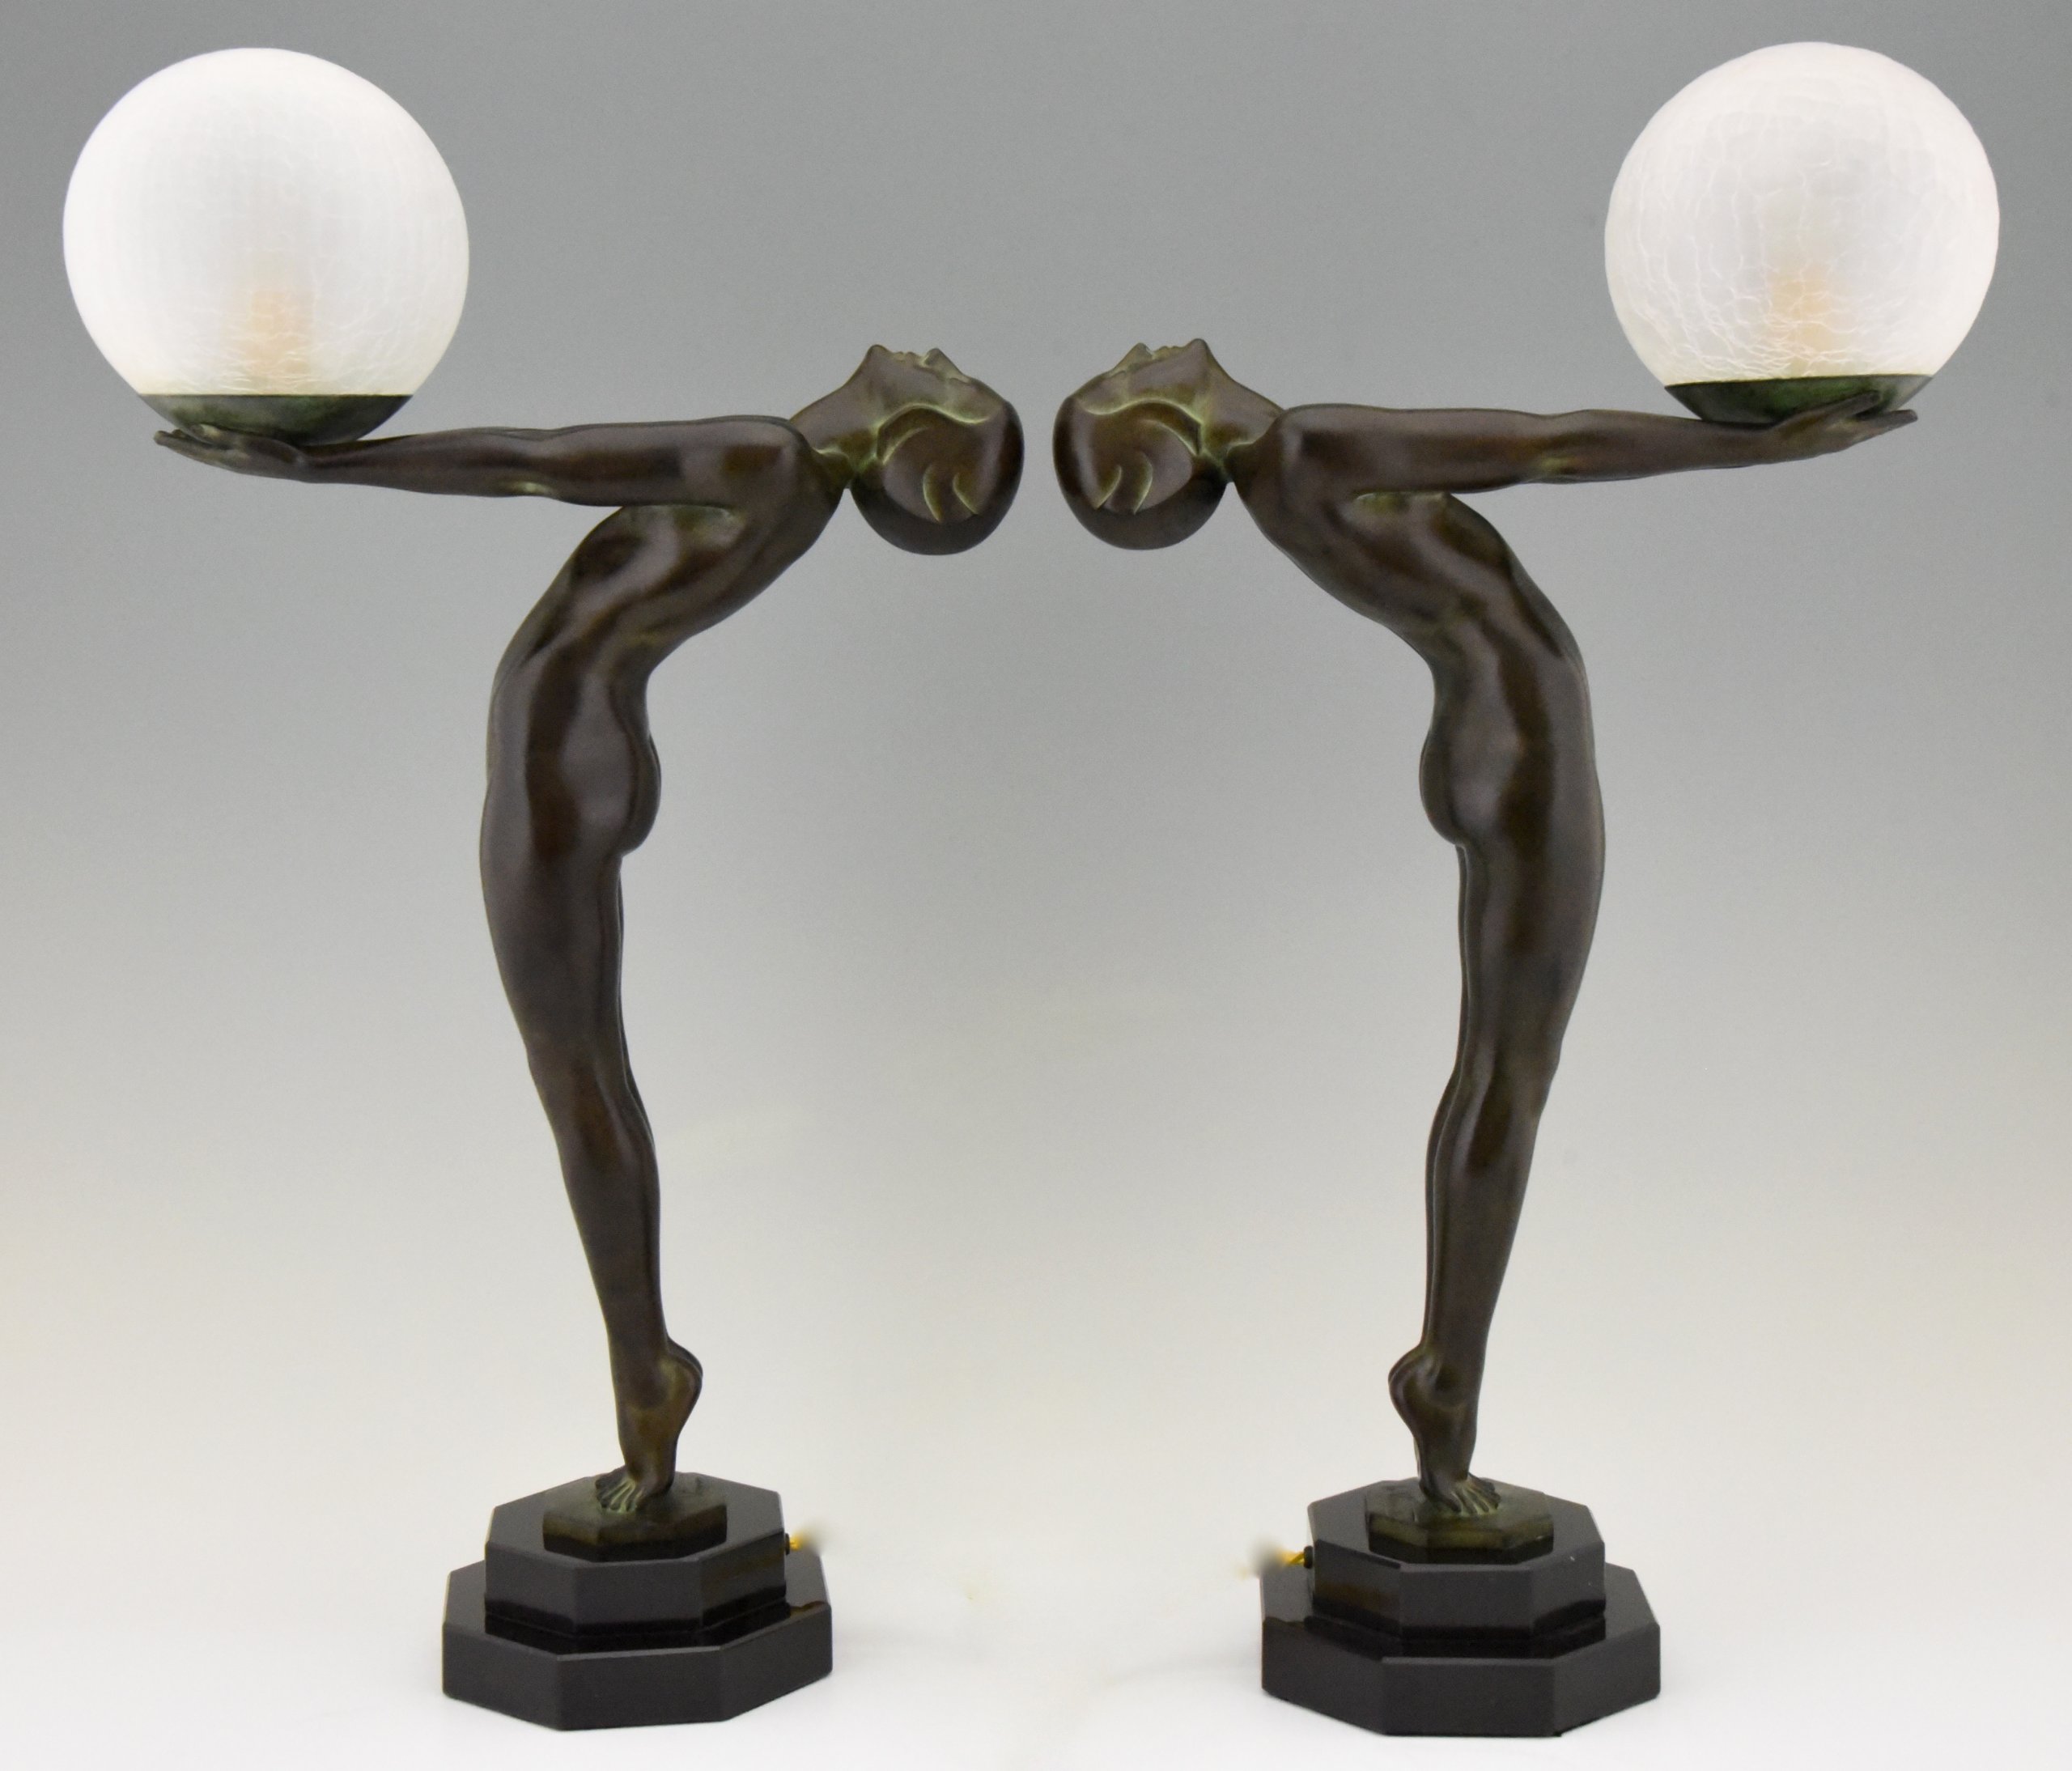 Lampe Art Deco - Comparatif & Sélection